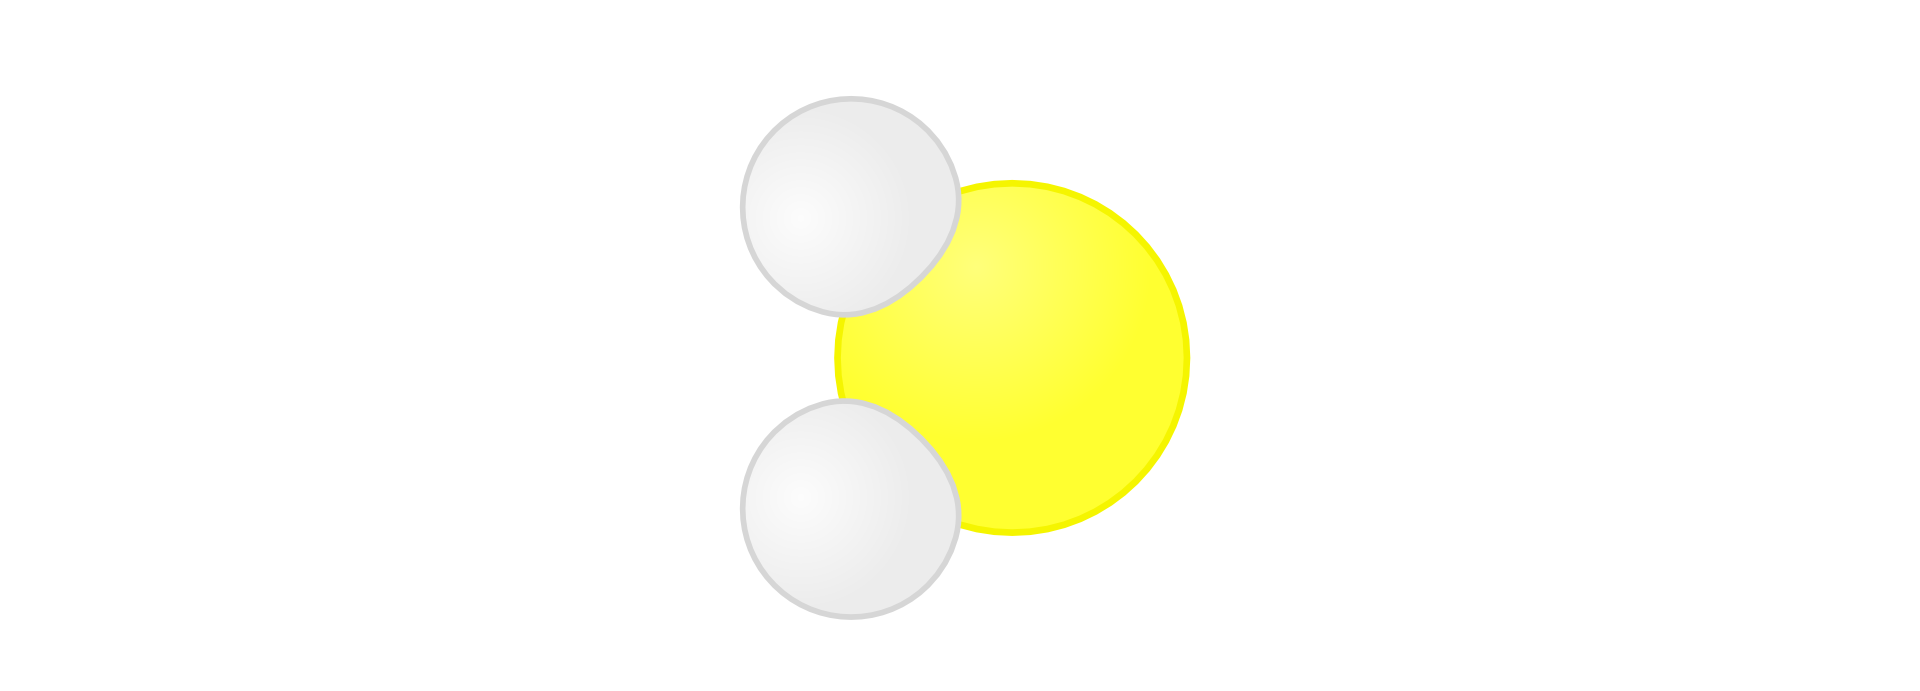 Ilustracja przedstawia model cząsteczki siarkowodoru składającej się z dwóch atomów wodoru symbolizowanych małymi białymi kołami ustawionymi jedno nad drugim po lewej stronie obrazka oraz połączonego z nimi atomu siarki symbolizowanego większym żółtym kołem ustawionego po ich prawej stronie pomiędzy nimi. Cały rysunek przypomina model cząsteczki wody, w której atom tlenu zastąpiono atomem siarki.